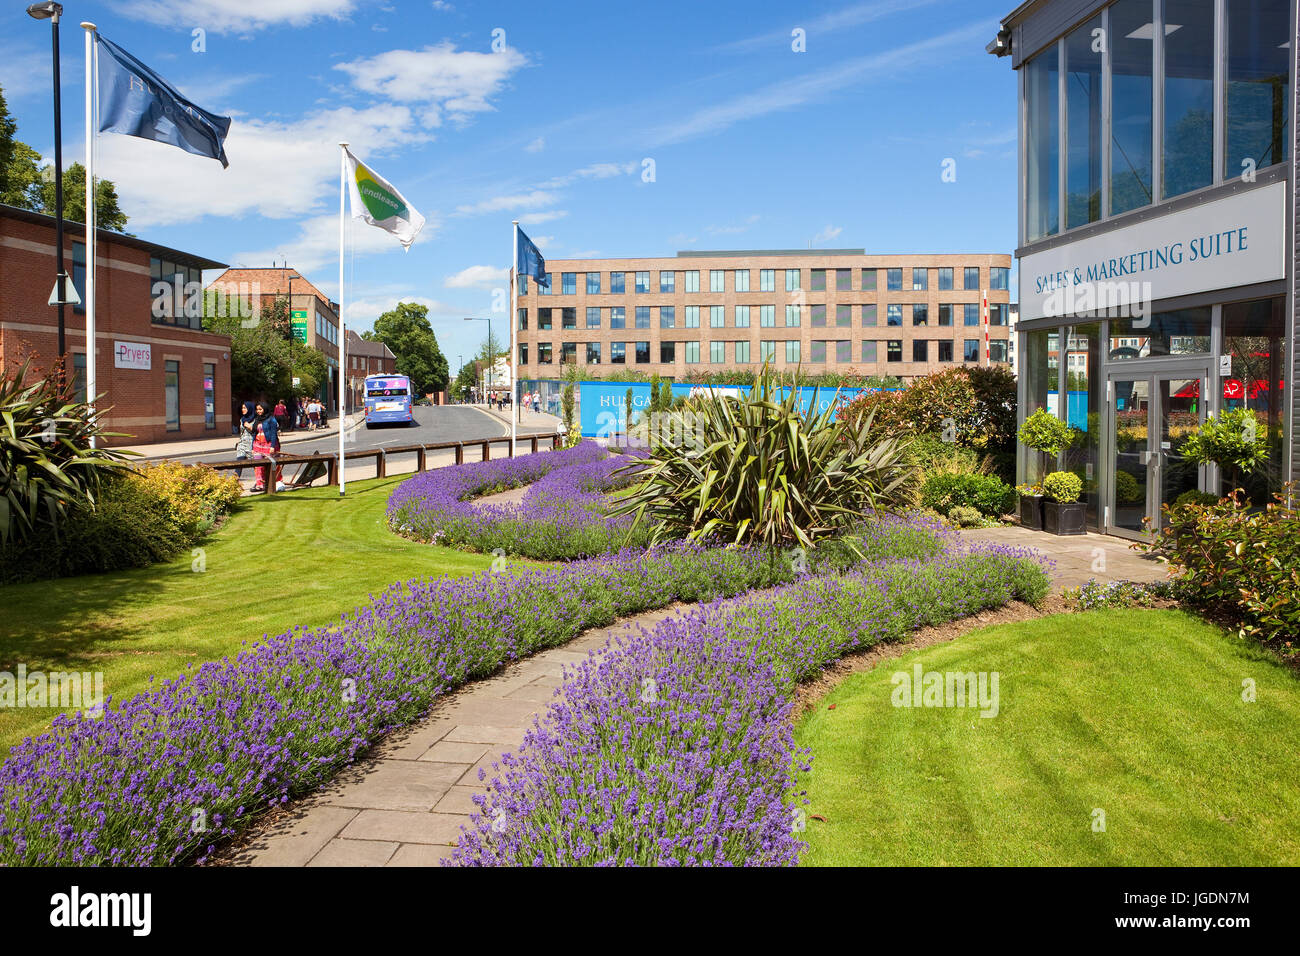 Bellissimo giardino con la suite di marketing presso il nuovo sviluppo Hungate nella storica città di York Foto Stock